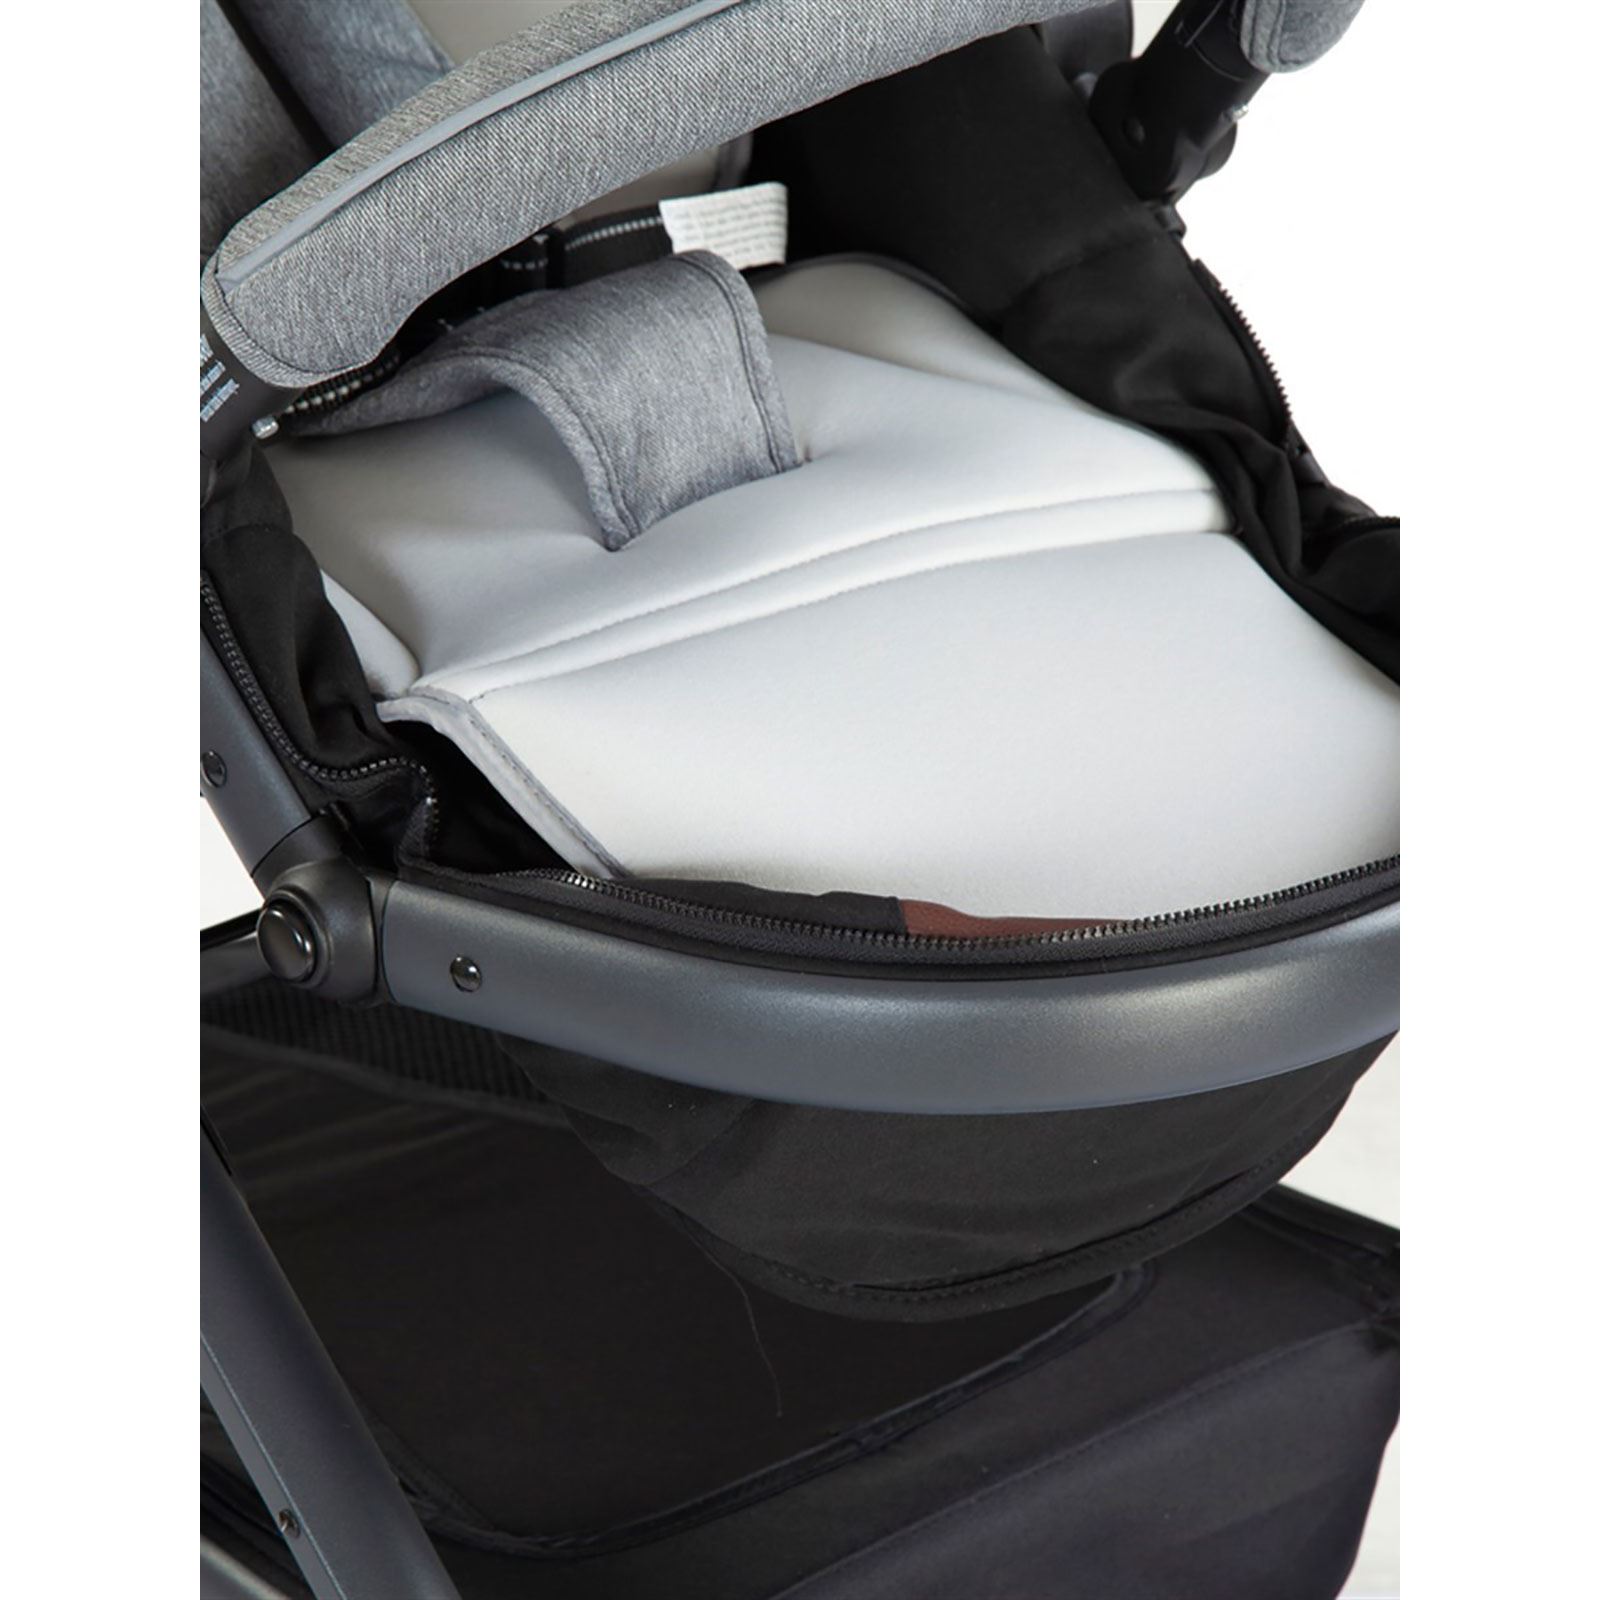 Kraft Pro Fit Plus Travel Sistem Bebek Arabası Gri